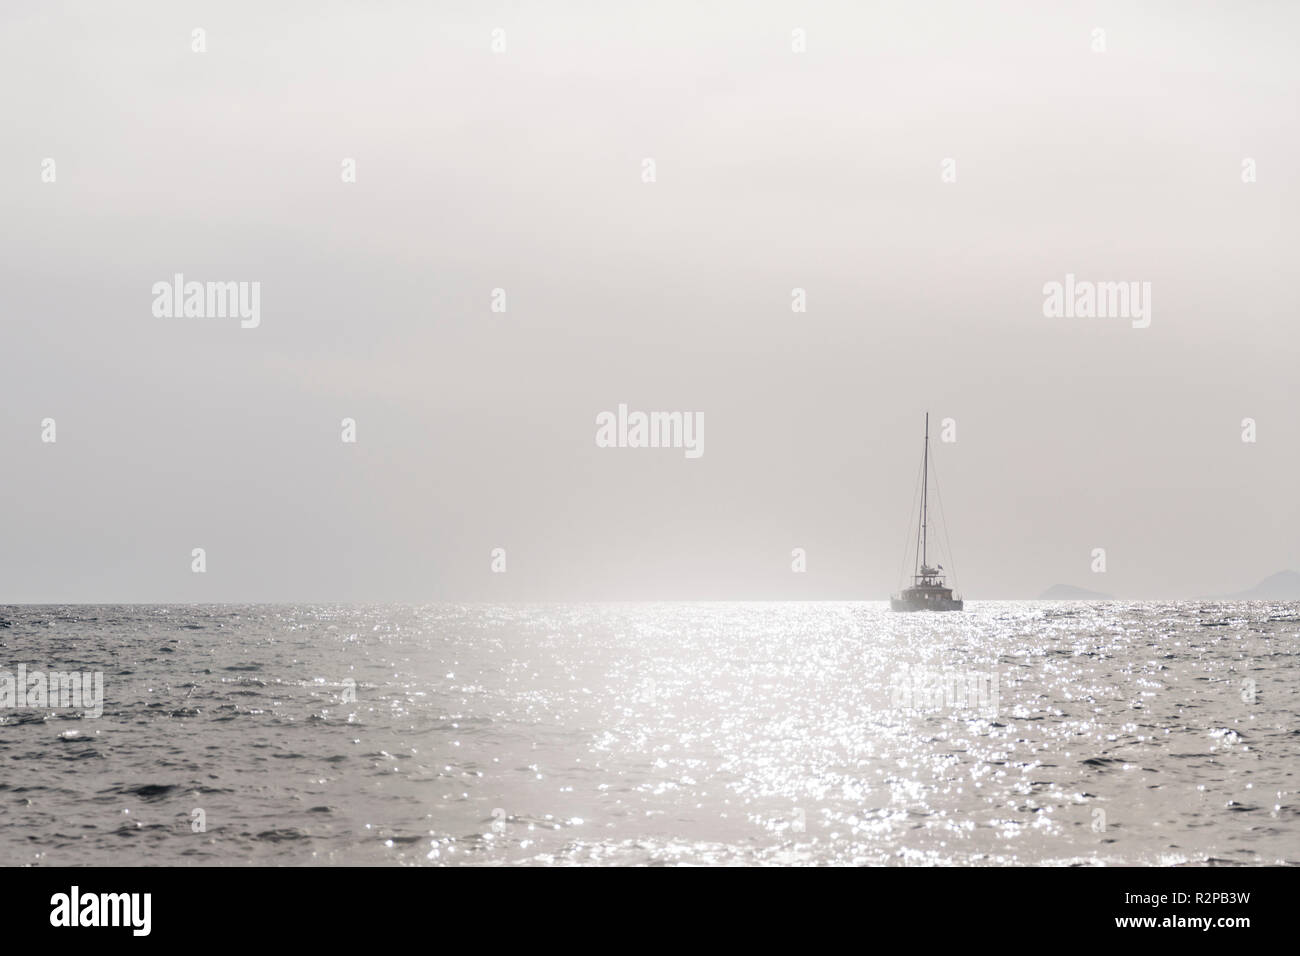 Einfarbig grau, minimalistischen Bild von einem Segelboot auf dem offenen Meer, Hell glitzert in der Sonne Stockfoto